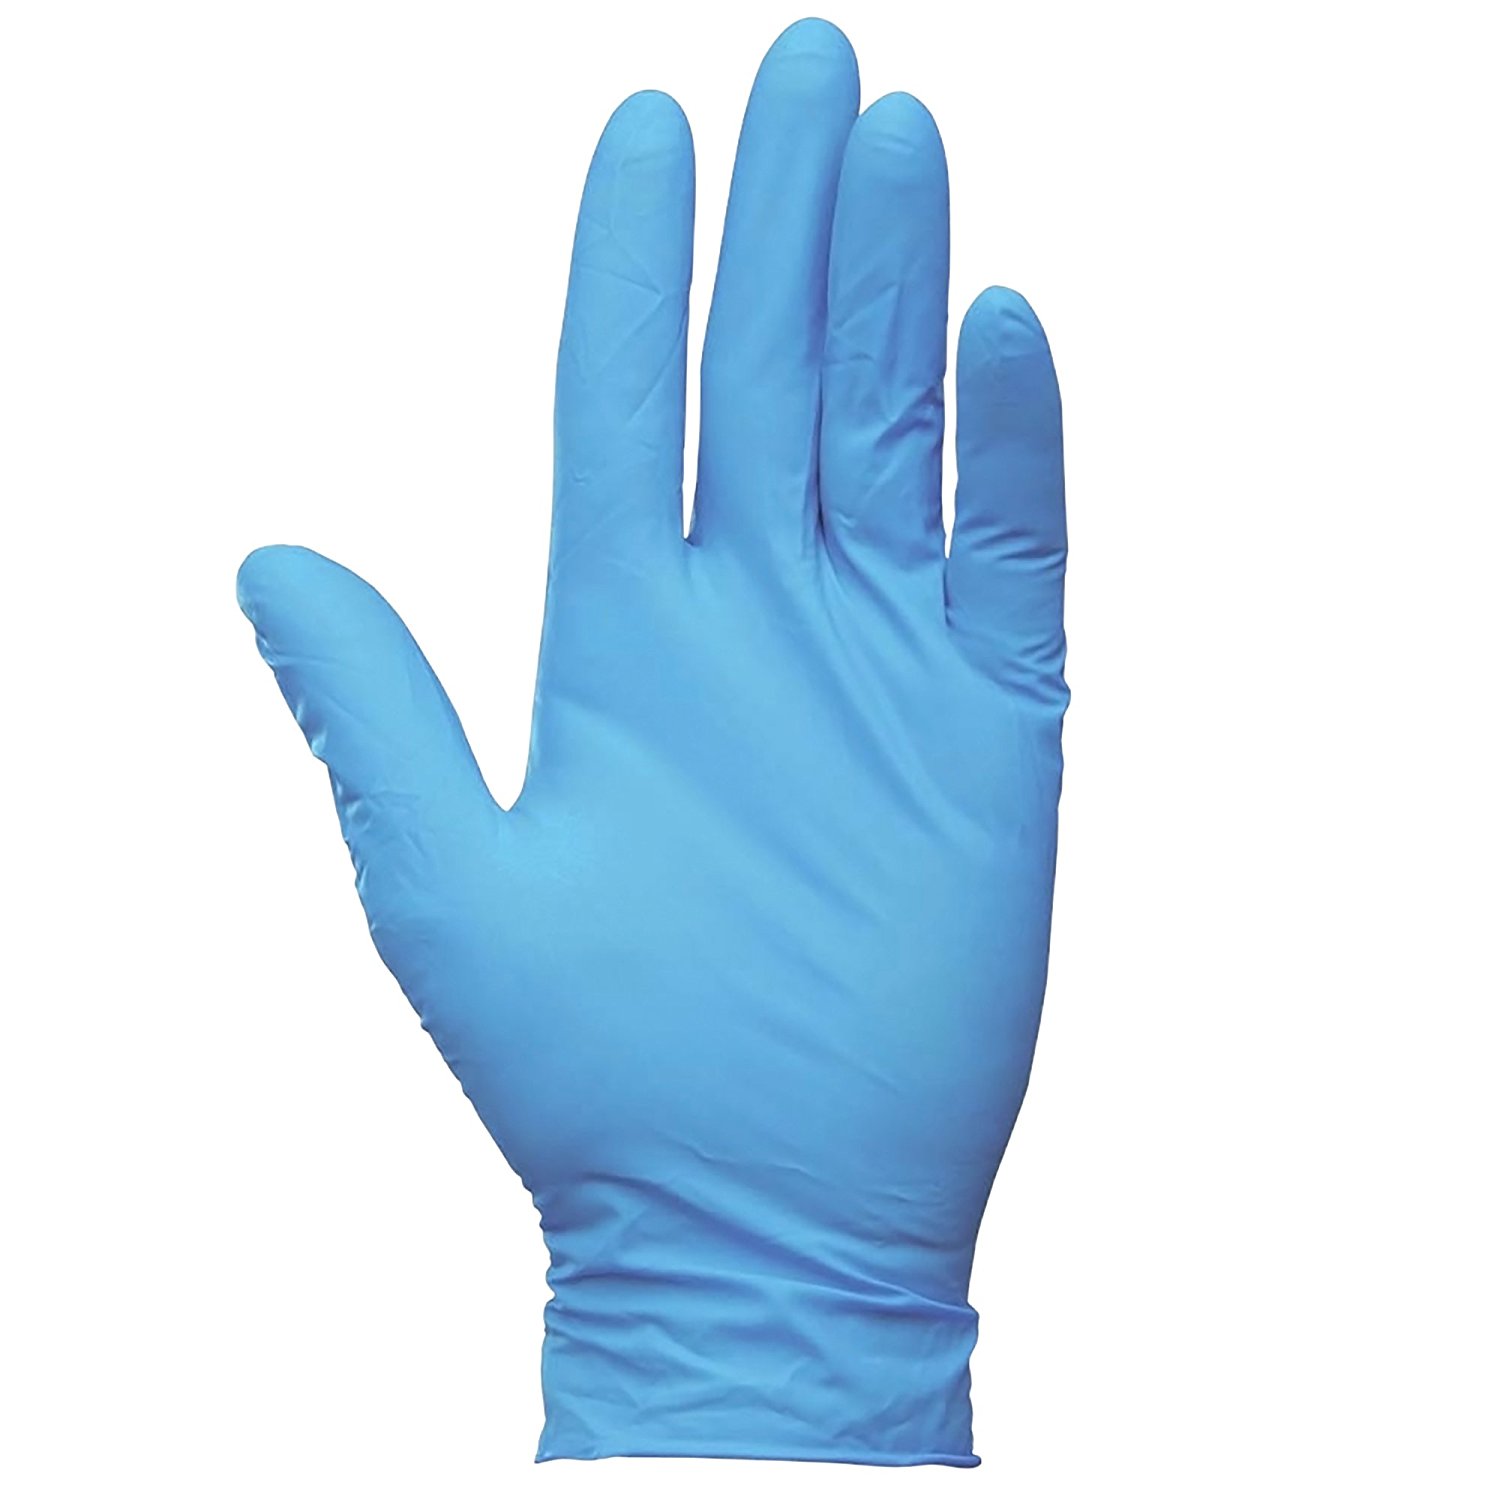 Ühekordsed nitriilkindad Ela Gloves S, sinised, puudrita, 100tk karbis